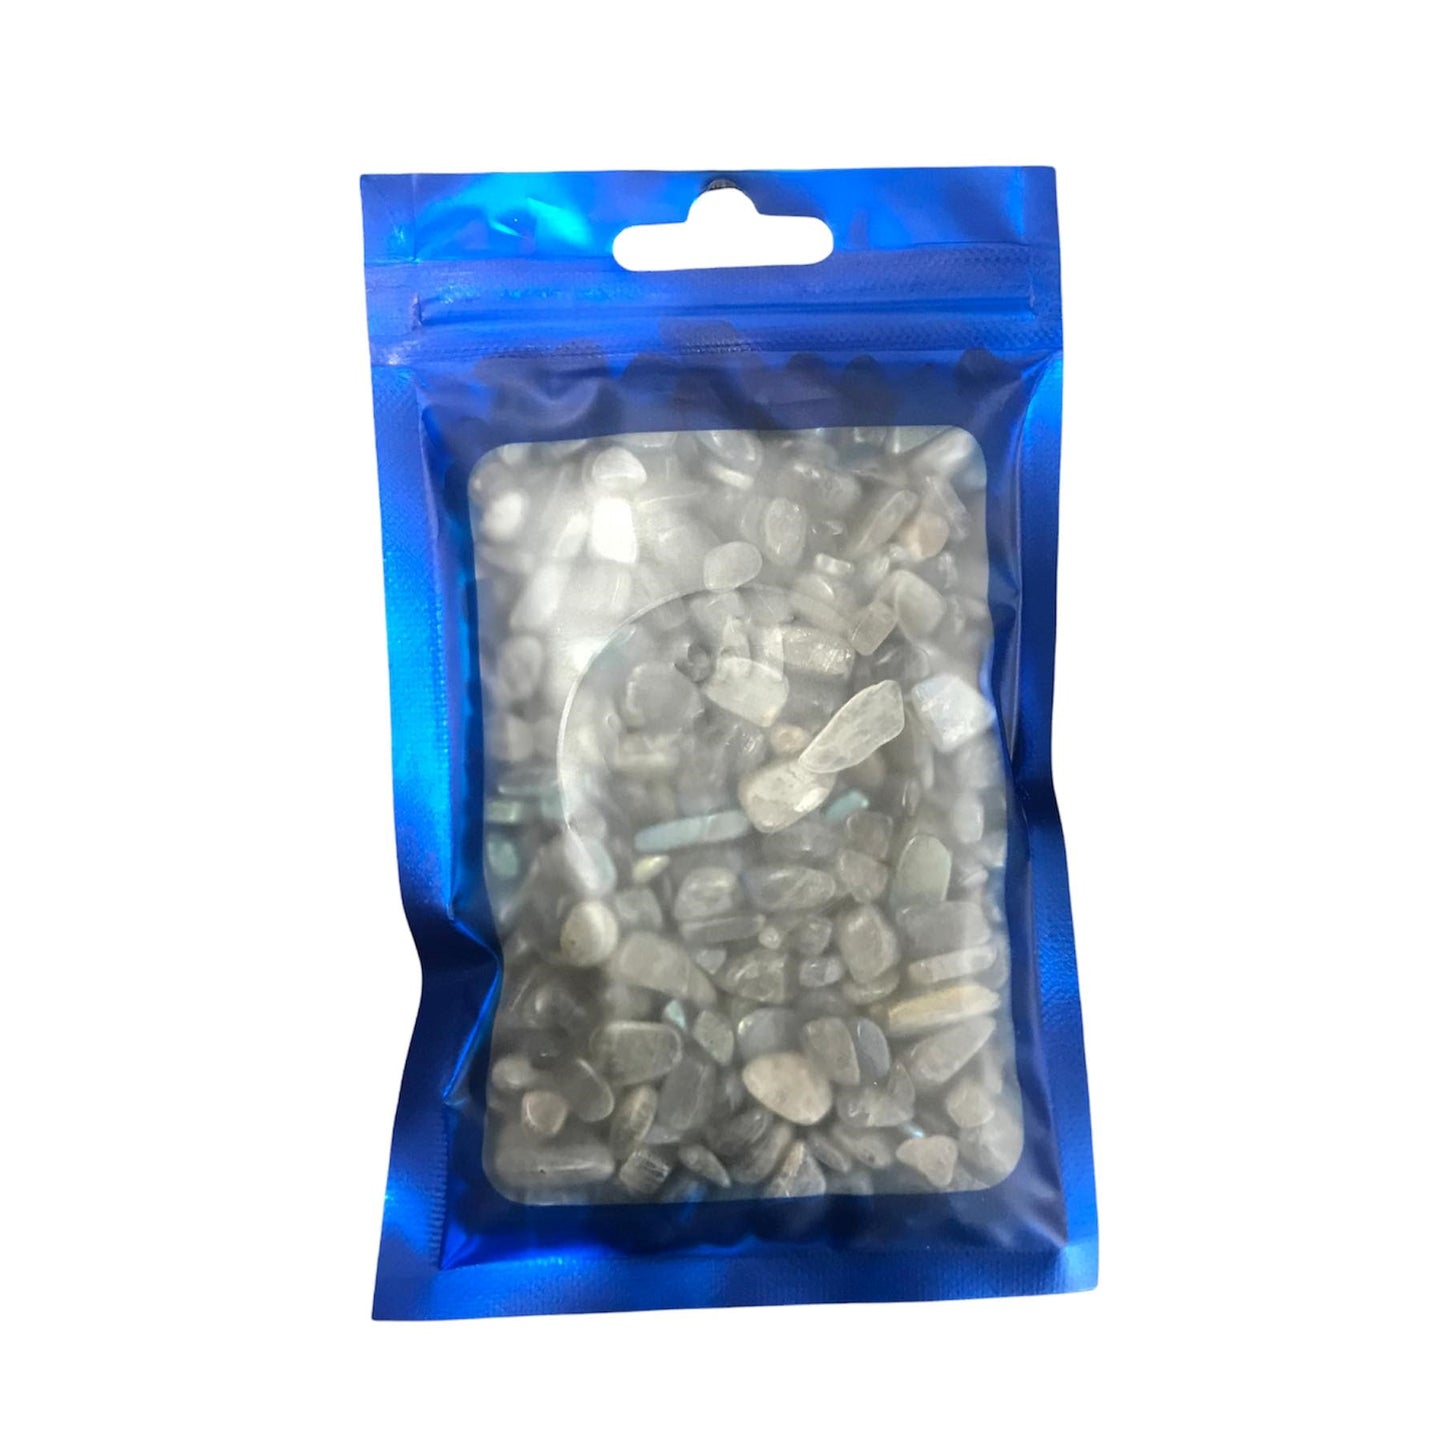 100g bag of Labradorite chips